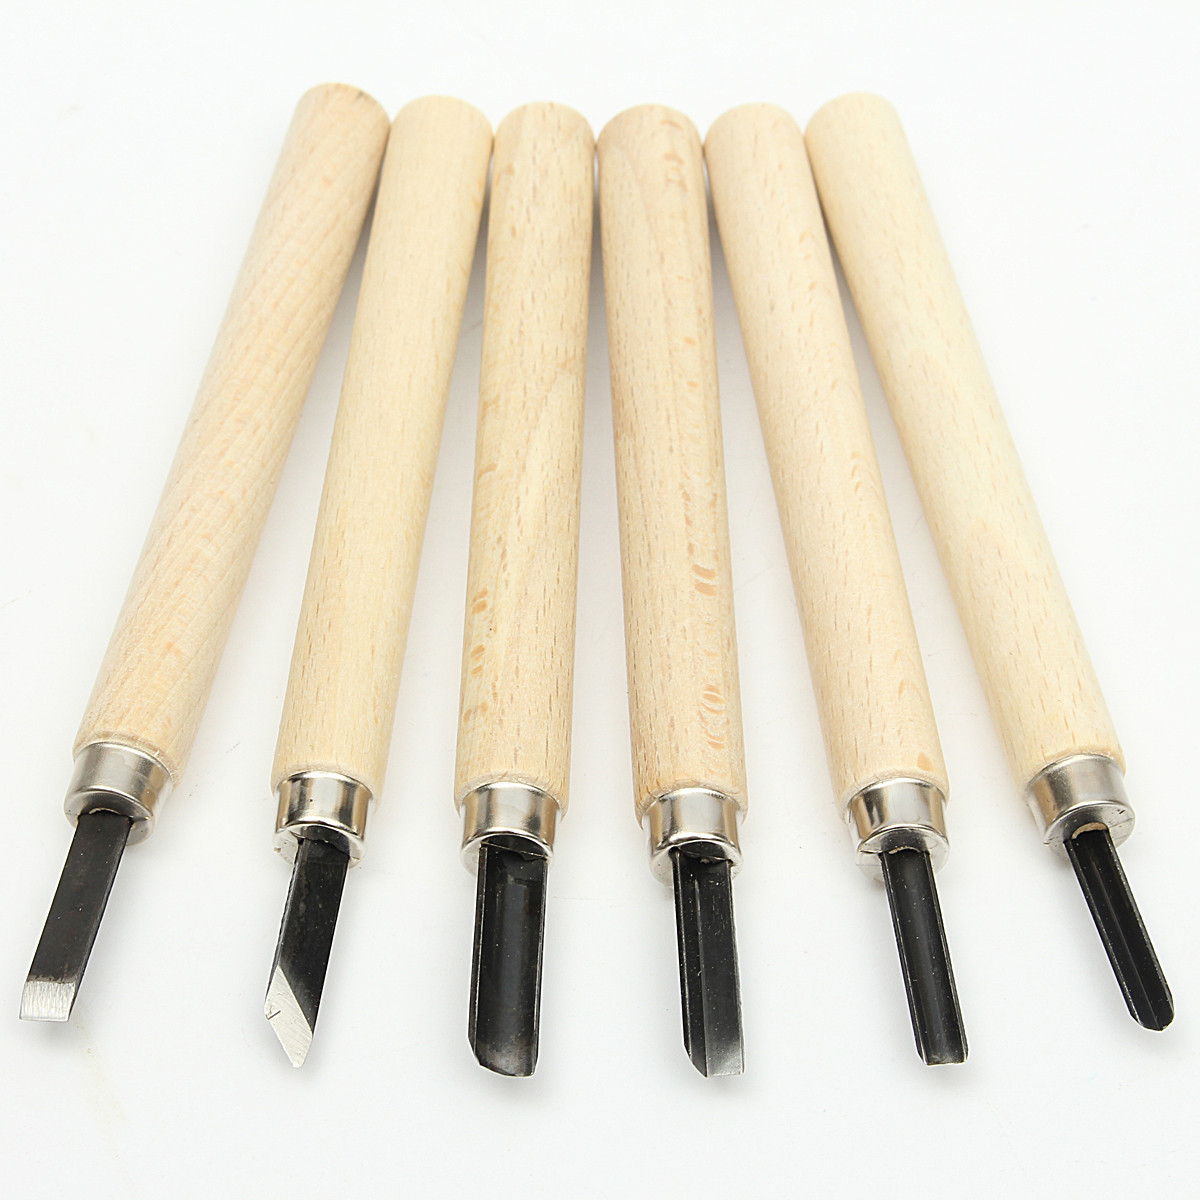 

6pcs деревянные резчики ручки резьба по дереву рабочие ложка долото ручные инструменты комплект